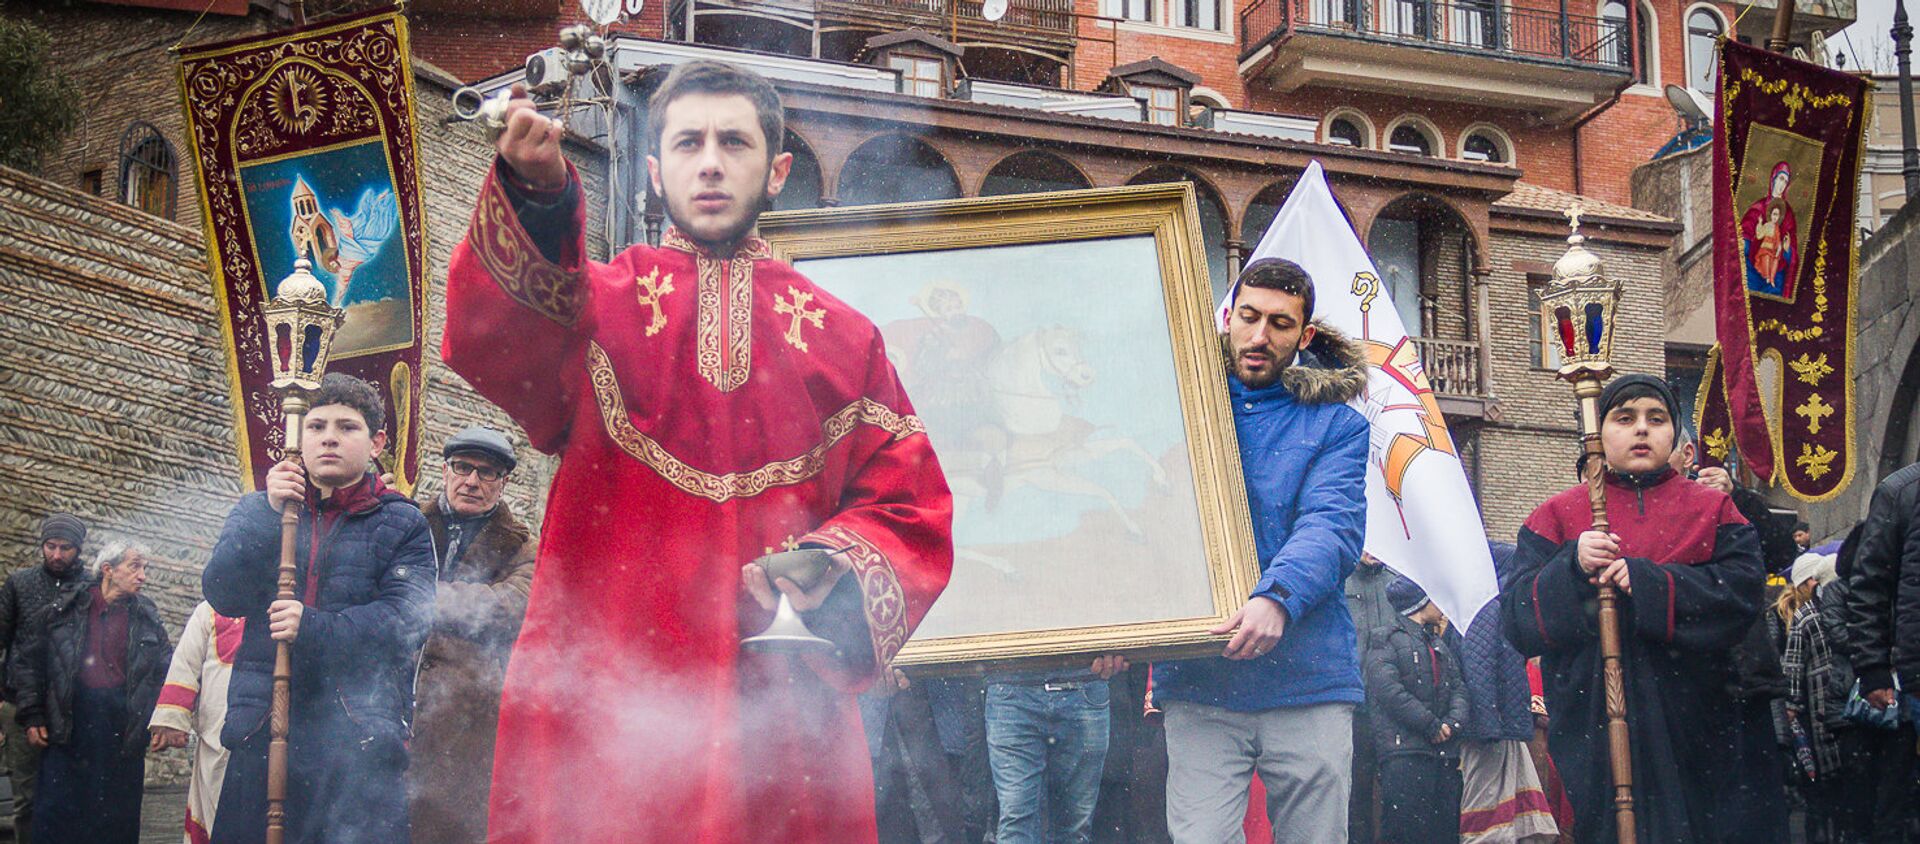 Армянский праздник всех влюбленных - шествие в День Святого Саркиса - Sputnik Грузия, 1920, 29.01.2021